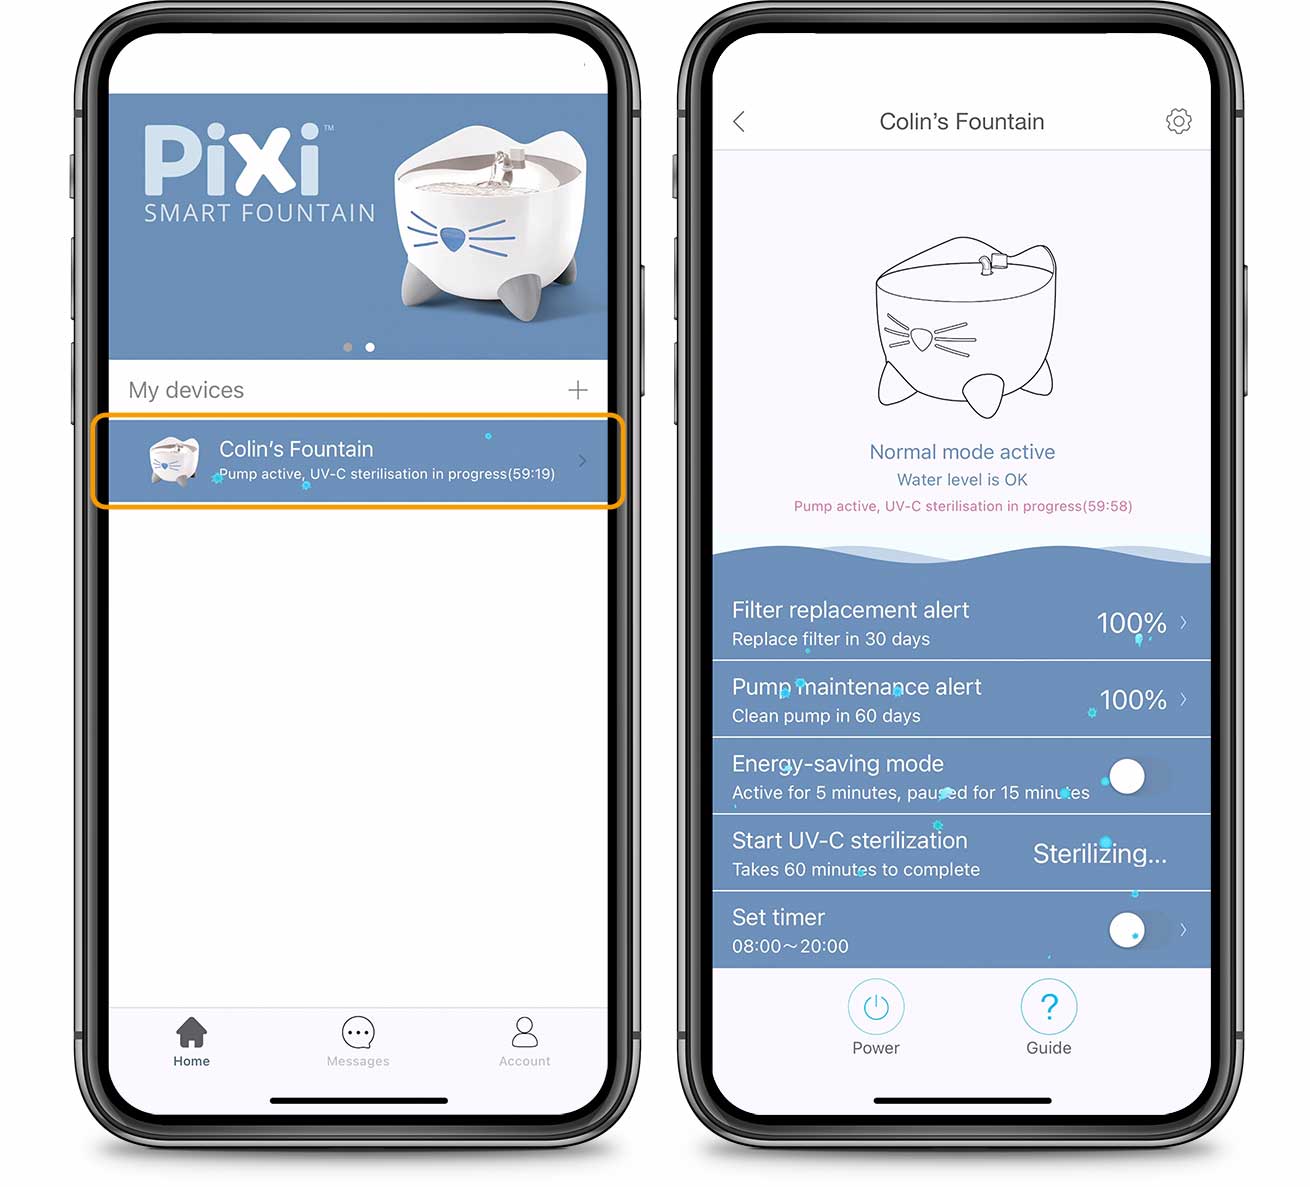 PIXI App Overview